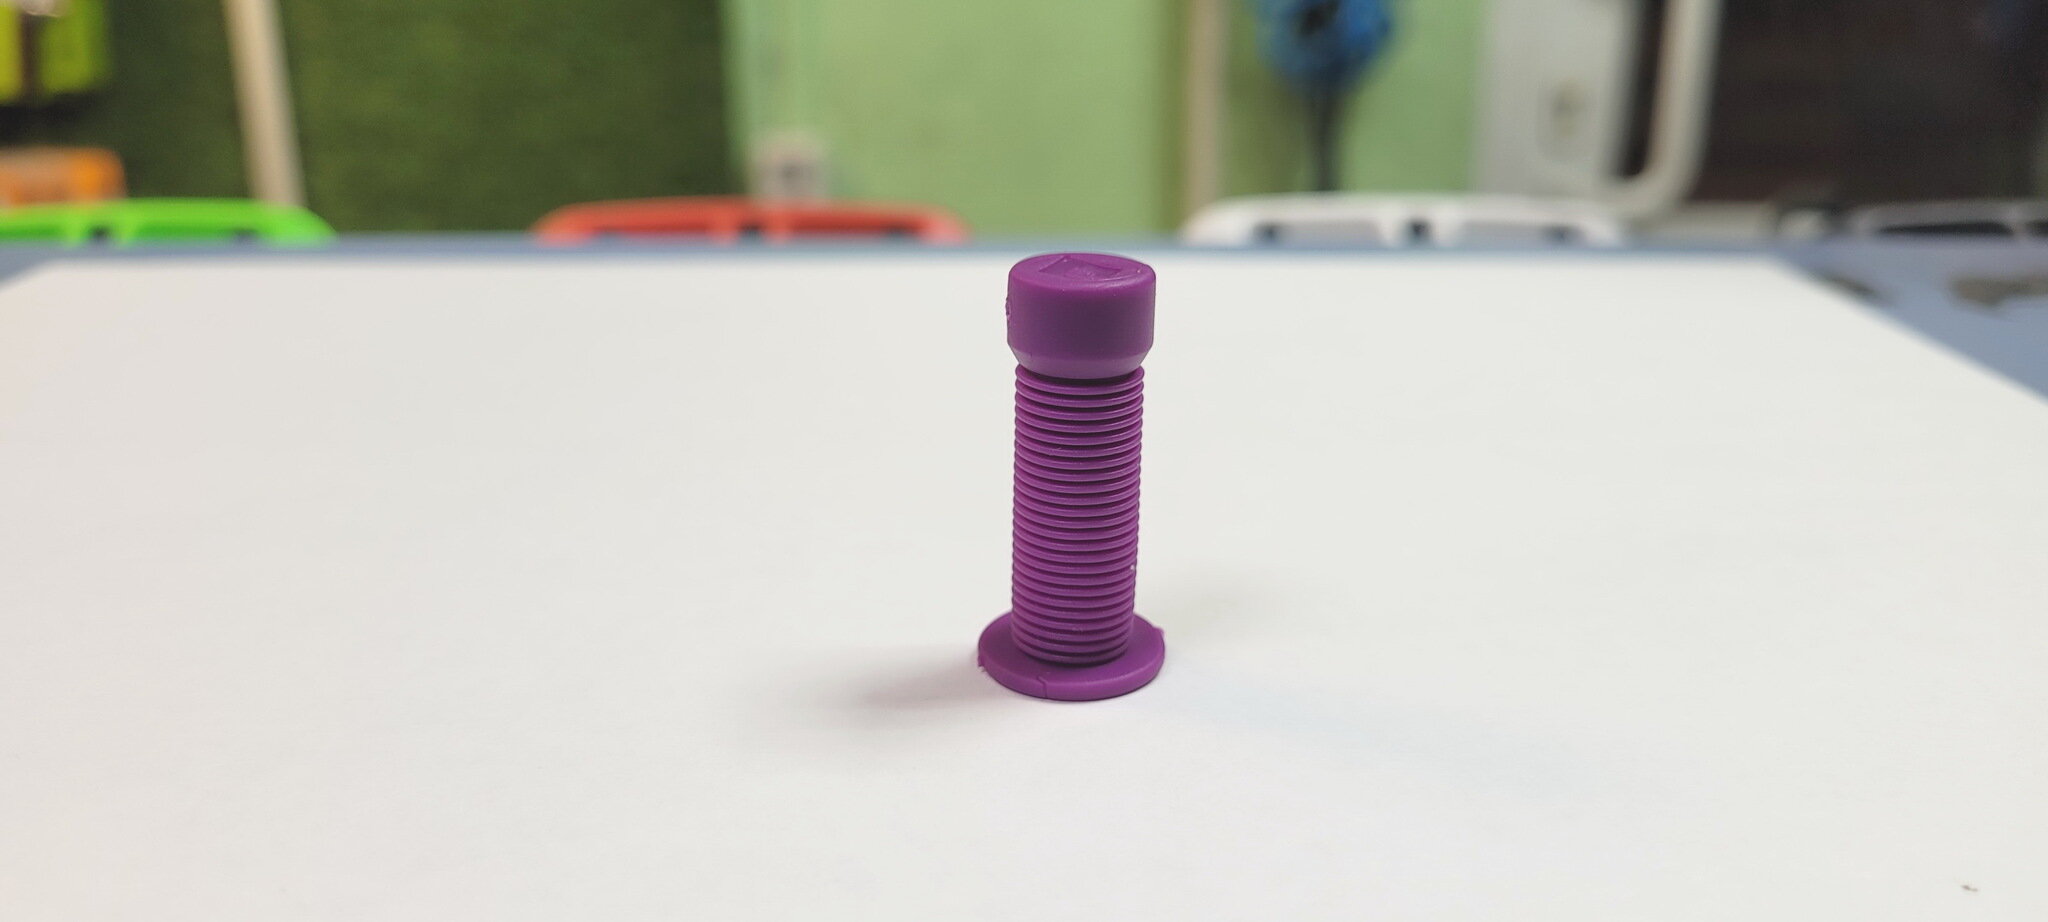 Колпачок на ниппель в форме грипсы ODI Longneck, Schrader, фиолетовый